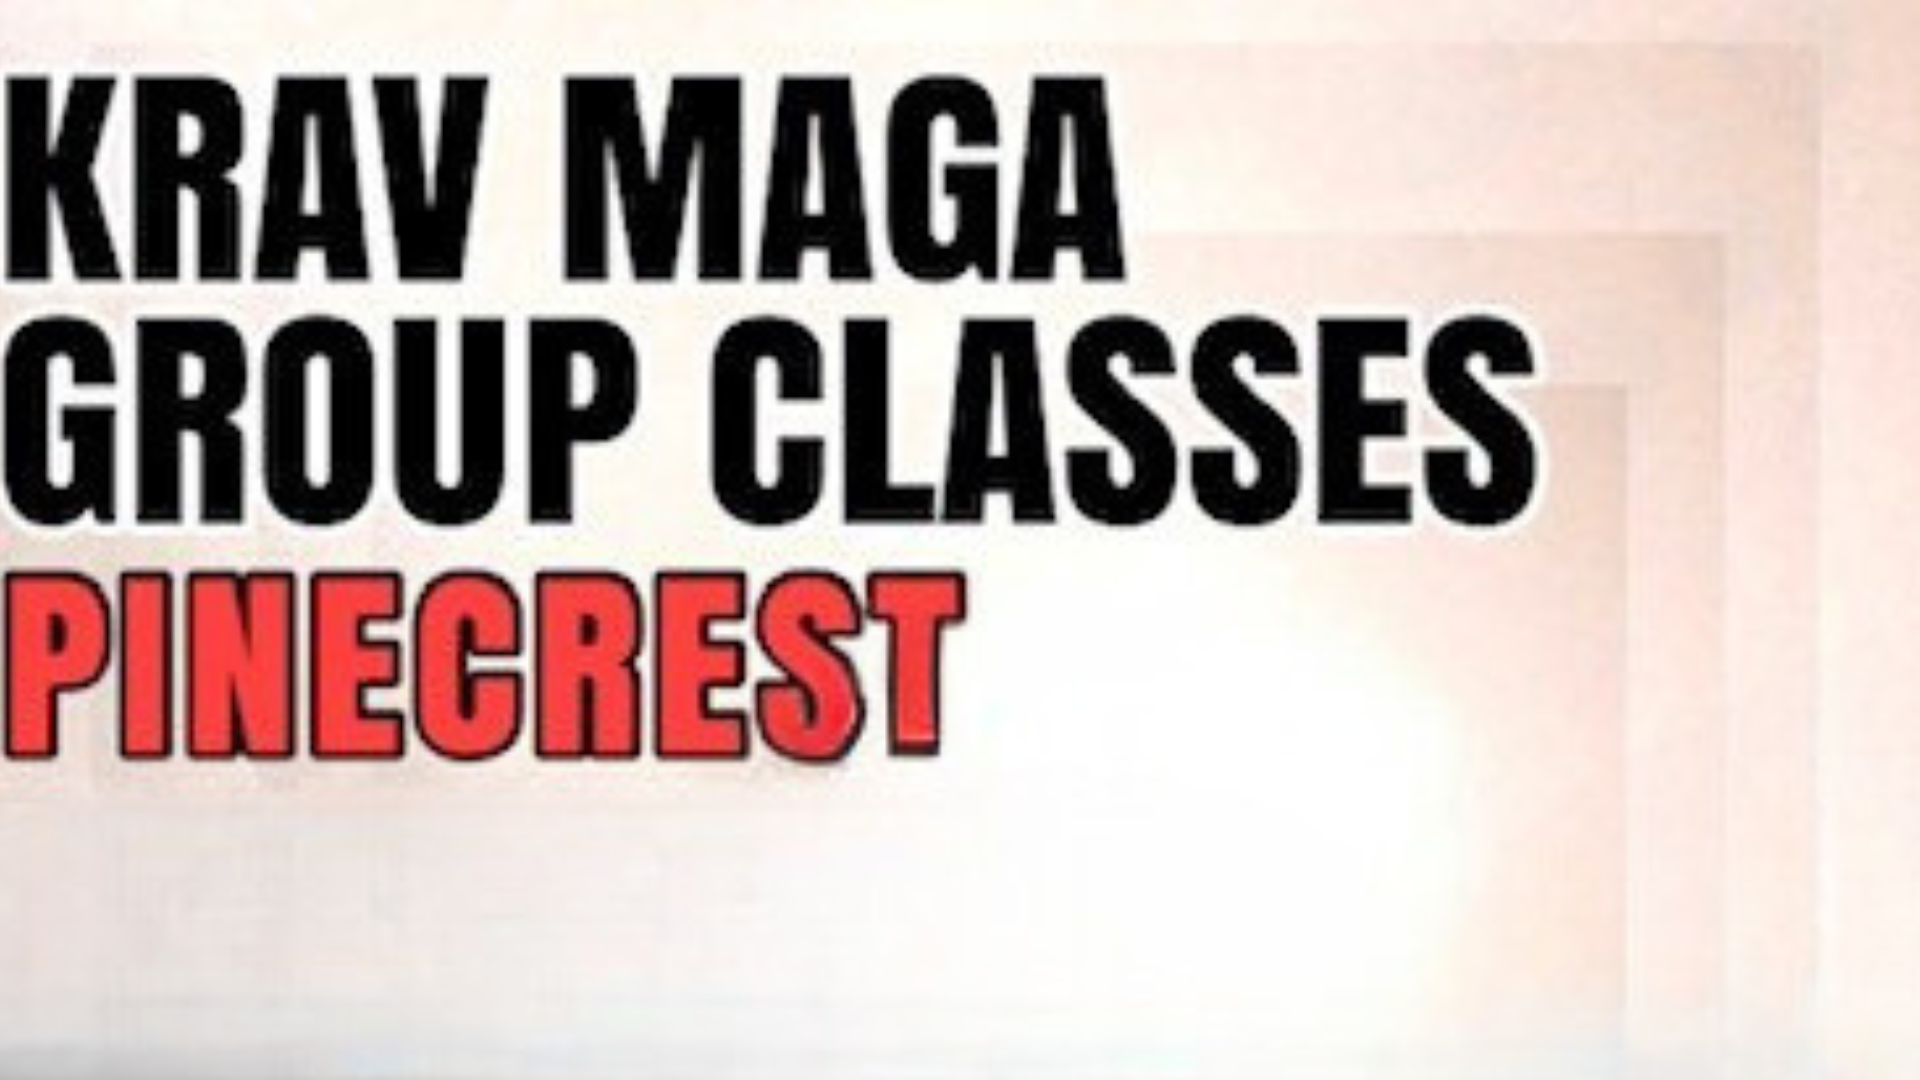 Krav Maga Group Classes Web Banner